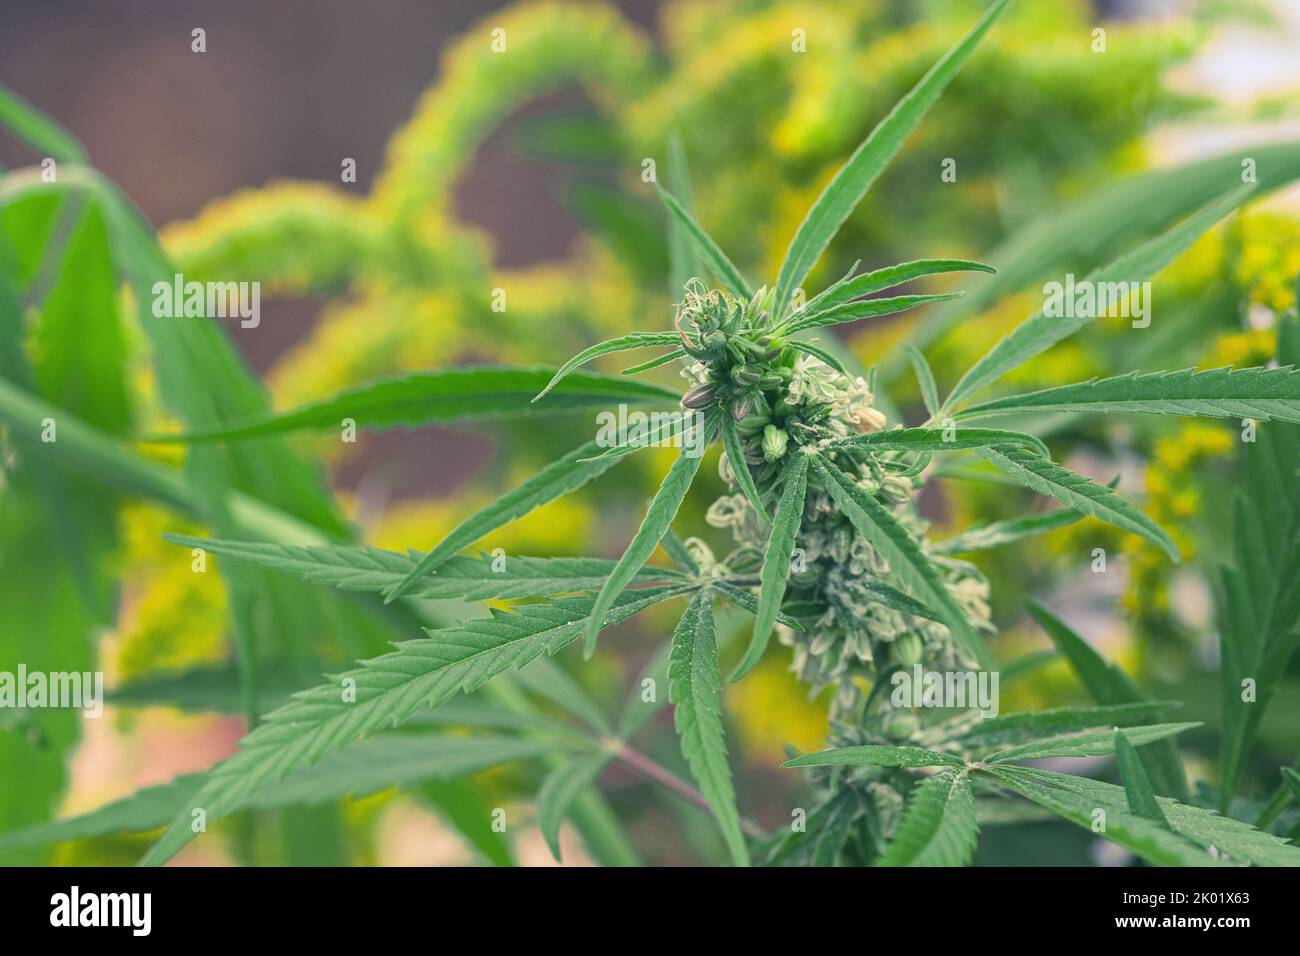 Oberer Teil von Unkraut, Marihuana oder Cannabispflanze mit Knospen und grünen Blättern, die in einem Garten wachsen, aus der Nähe Stockfoto